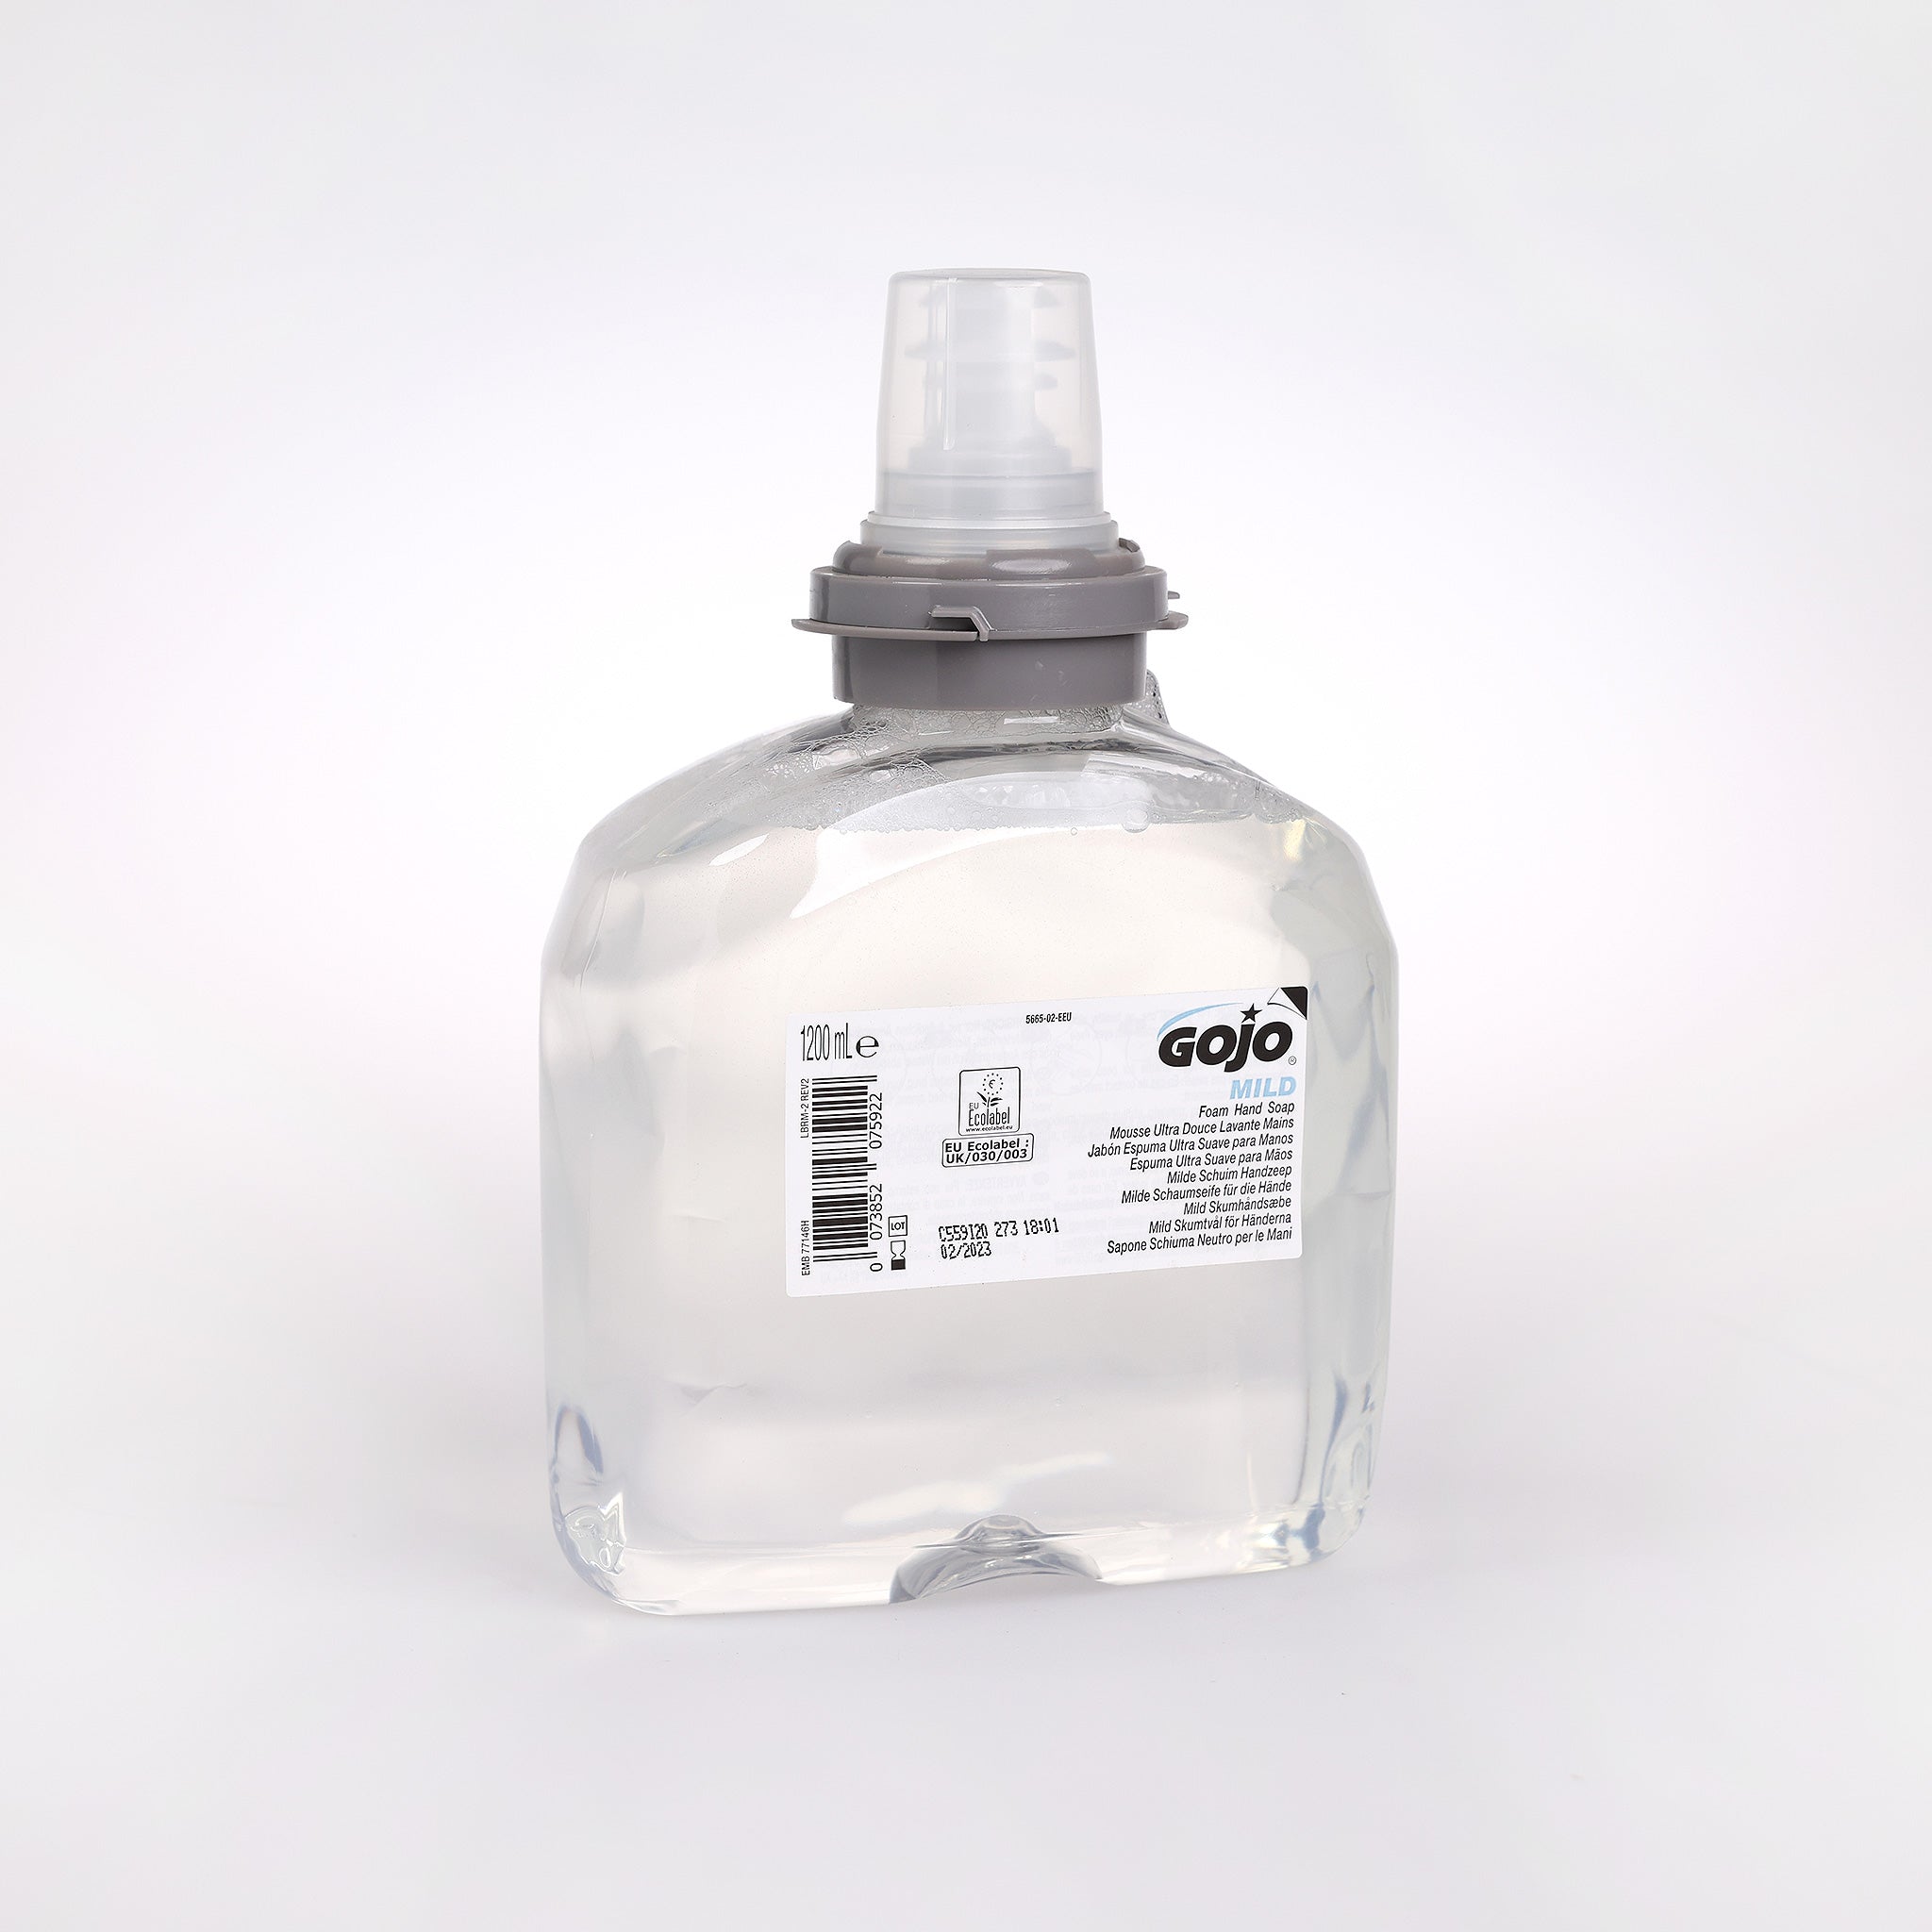 Håndsæben Gojo Mild TFX Refill kan findes hos Cares.dk. Skumsæben er uden parfume og farve, og giver en effektiv håndvask.